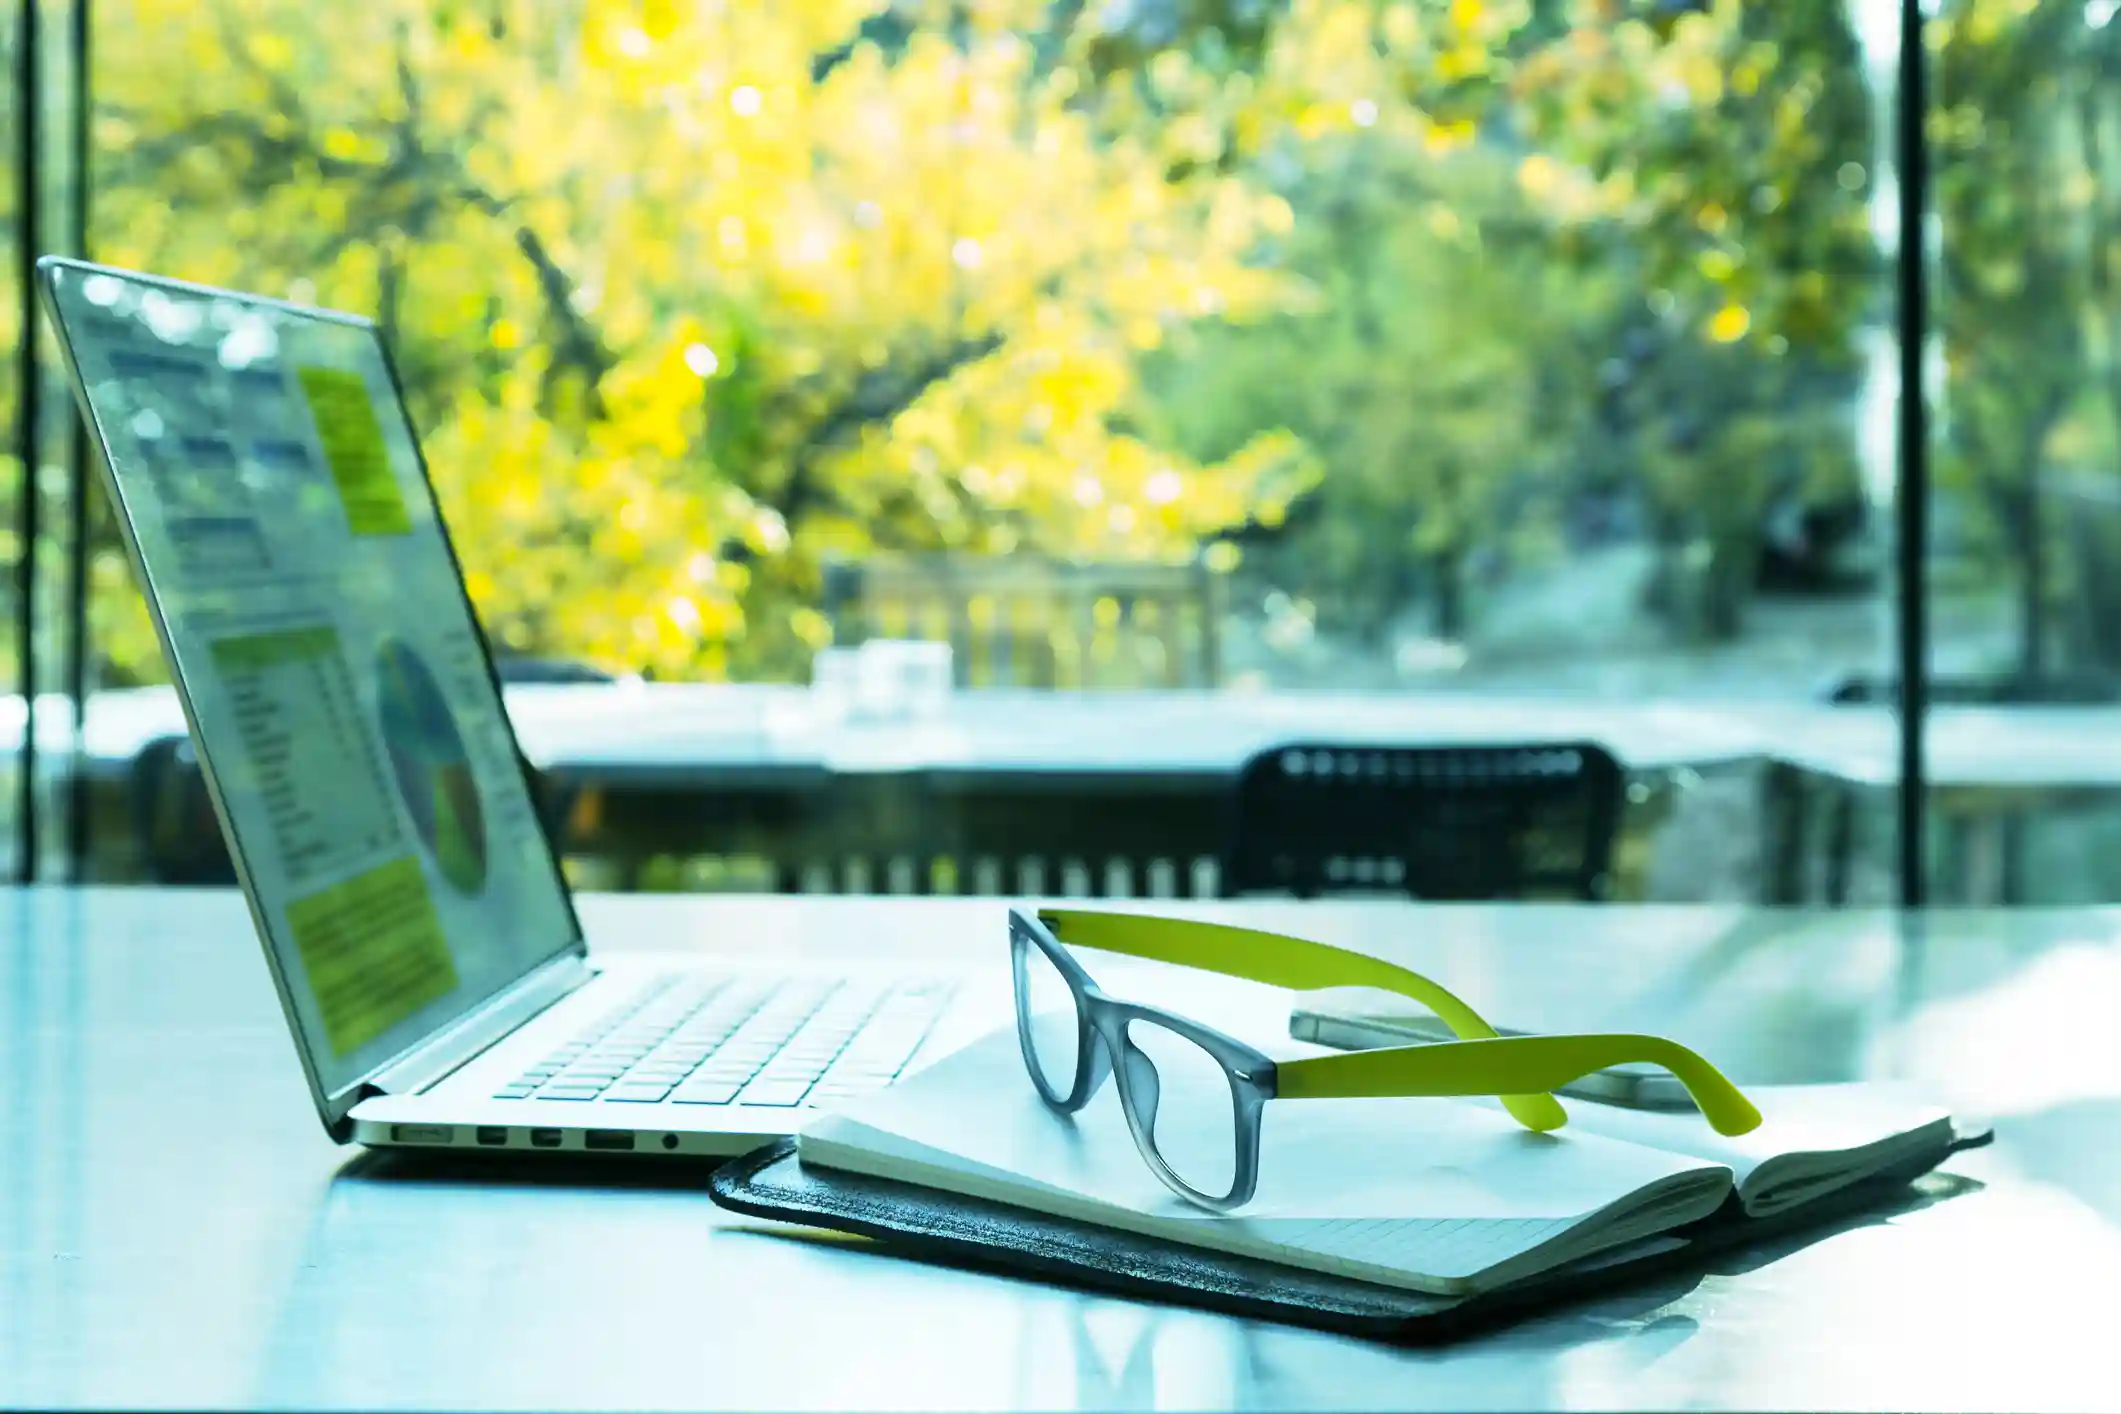 Un ordinateur portable ouvert affichant des graphiques, posé sur une table avec un carnet ouvert et une paire de lunettes. La scène est éclairée par la lumière naturelle provenant de grandes fenêtres donnant sur un paysage verdoyant, suggérant un environnement de travail axé sur l'éco-conception.